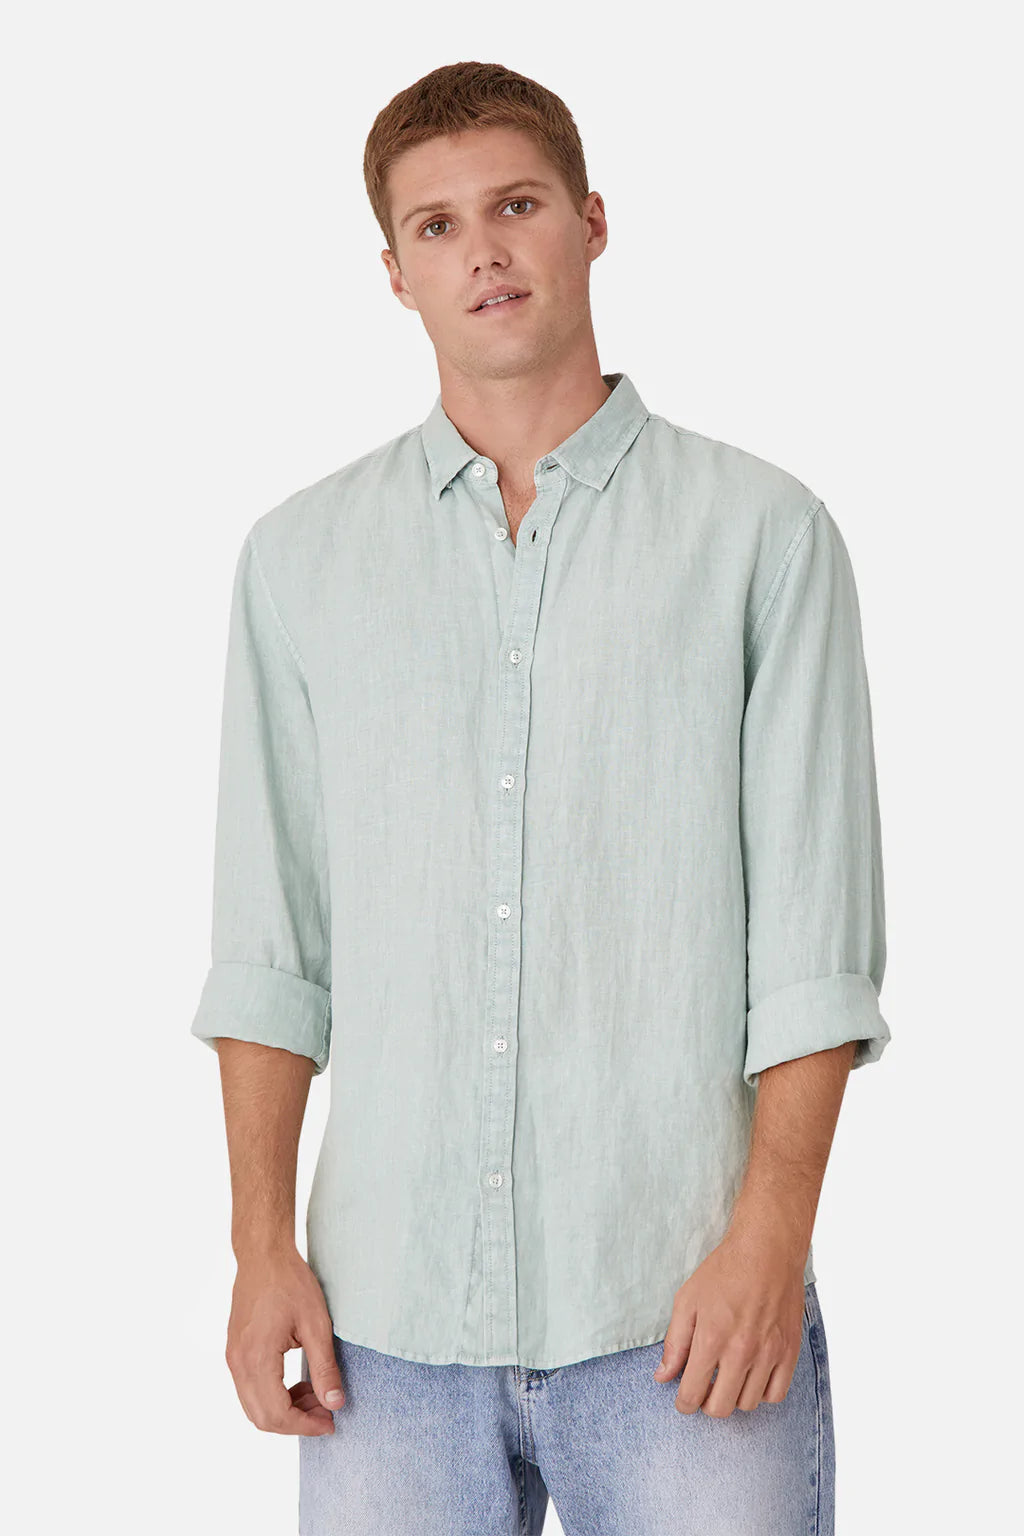 Industrie Tennyson L/S Linen Shirt